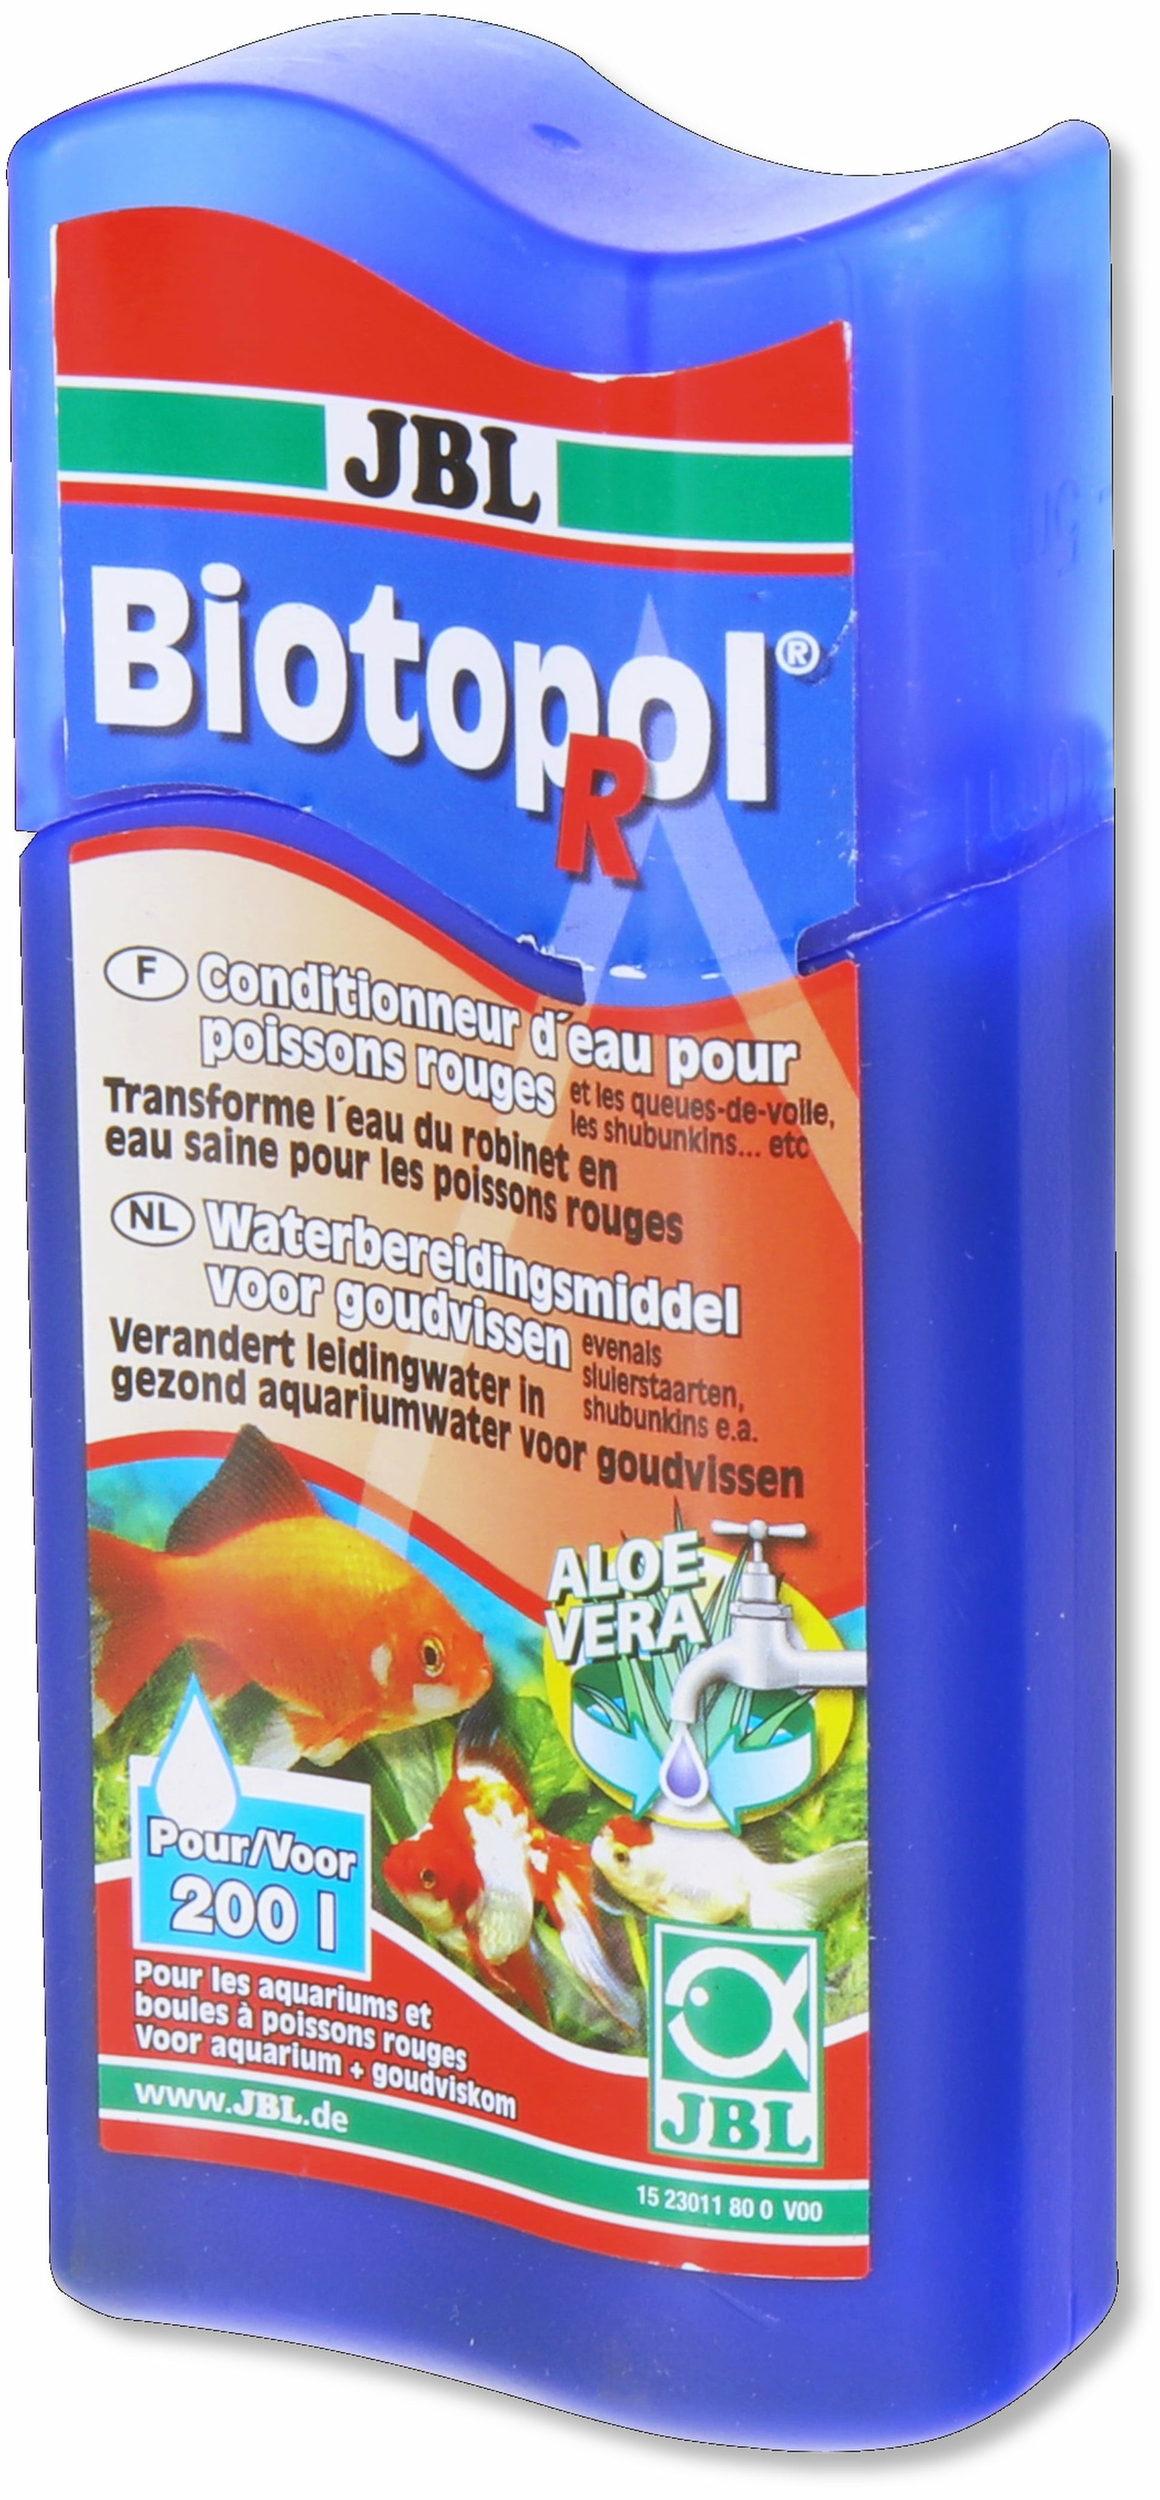 JBL Biotopol R 100 ml conditionneur d'eau du robinet pour poissons